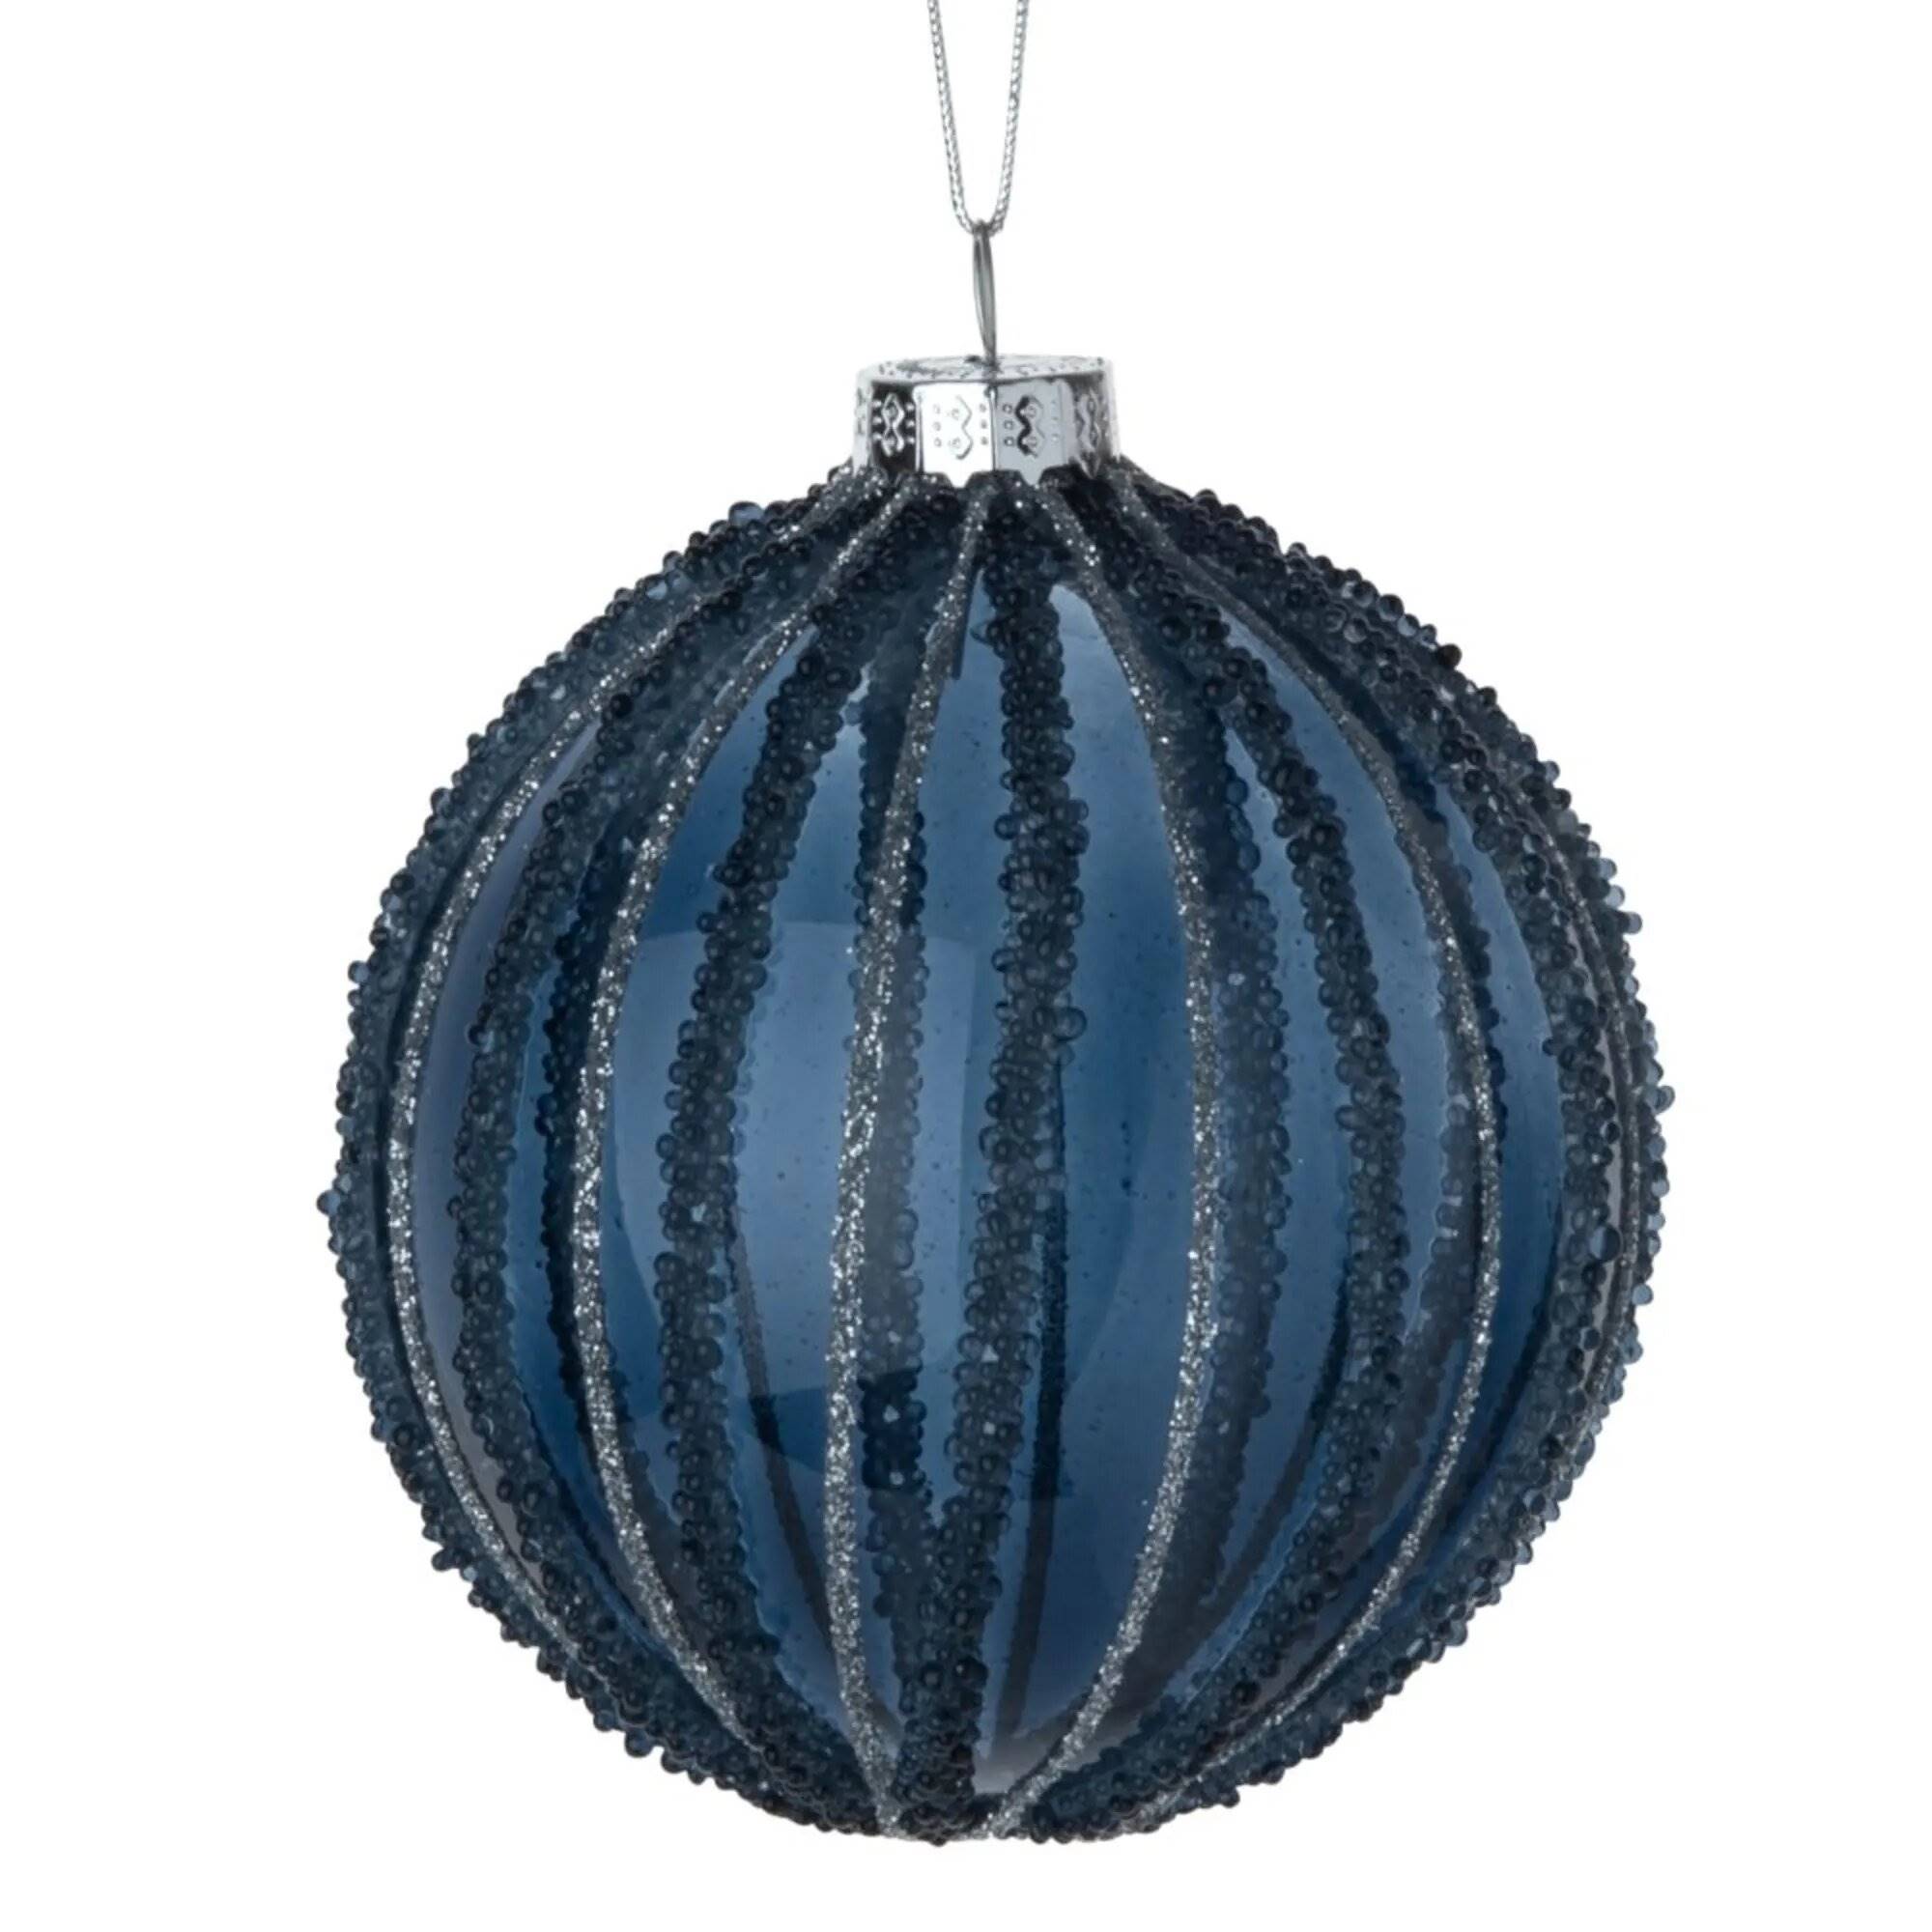 Bola de Navidad de color azul oscuro.